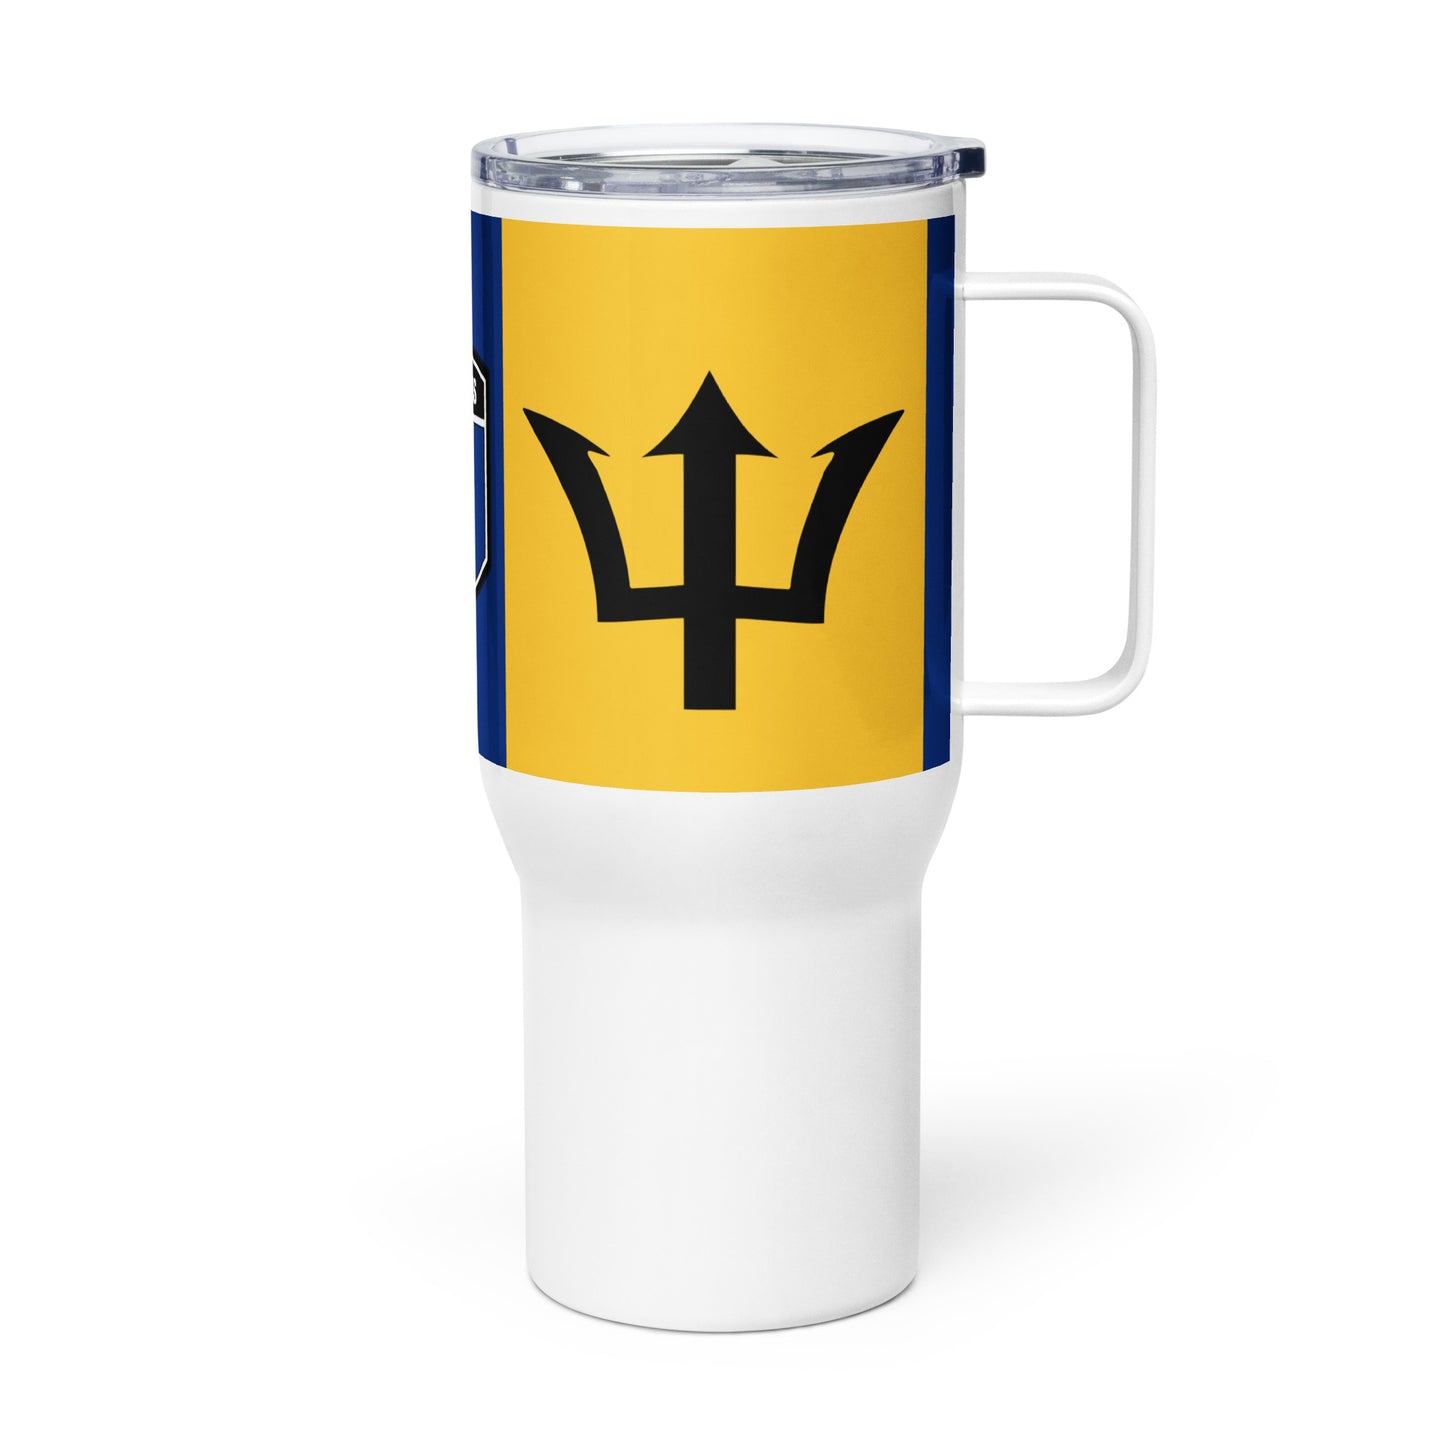 Barbados Travel mug with a handle